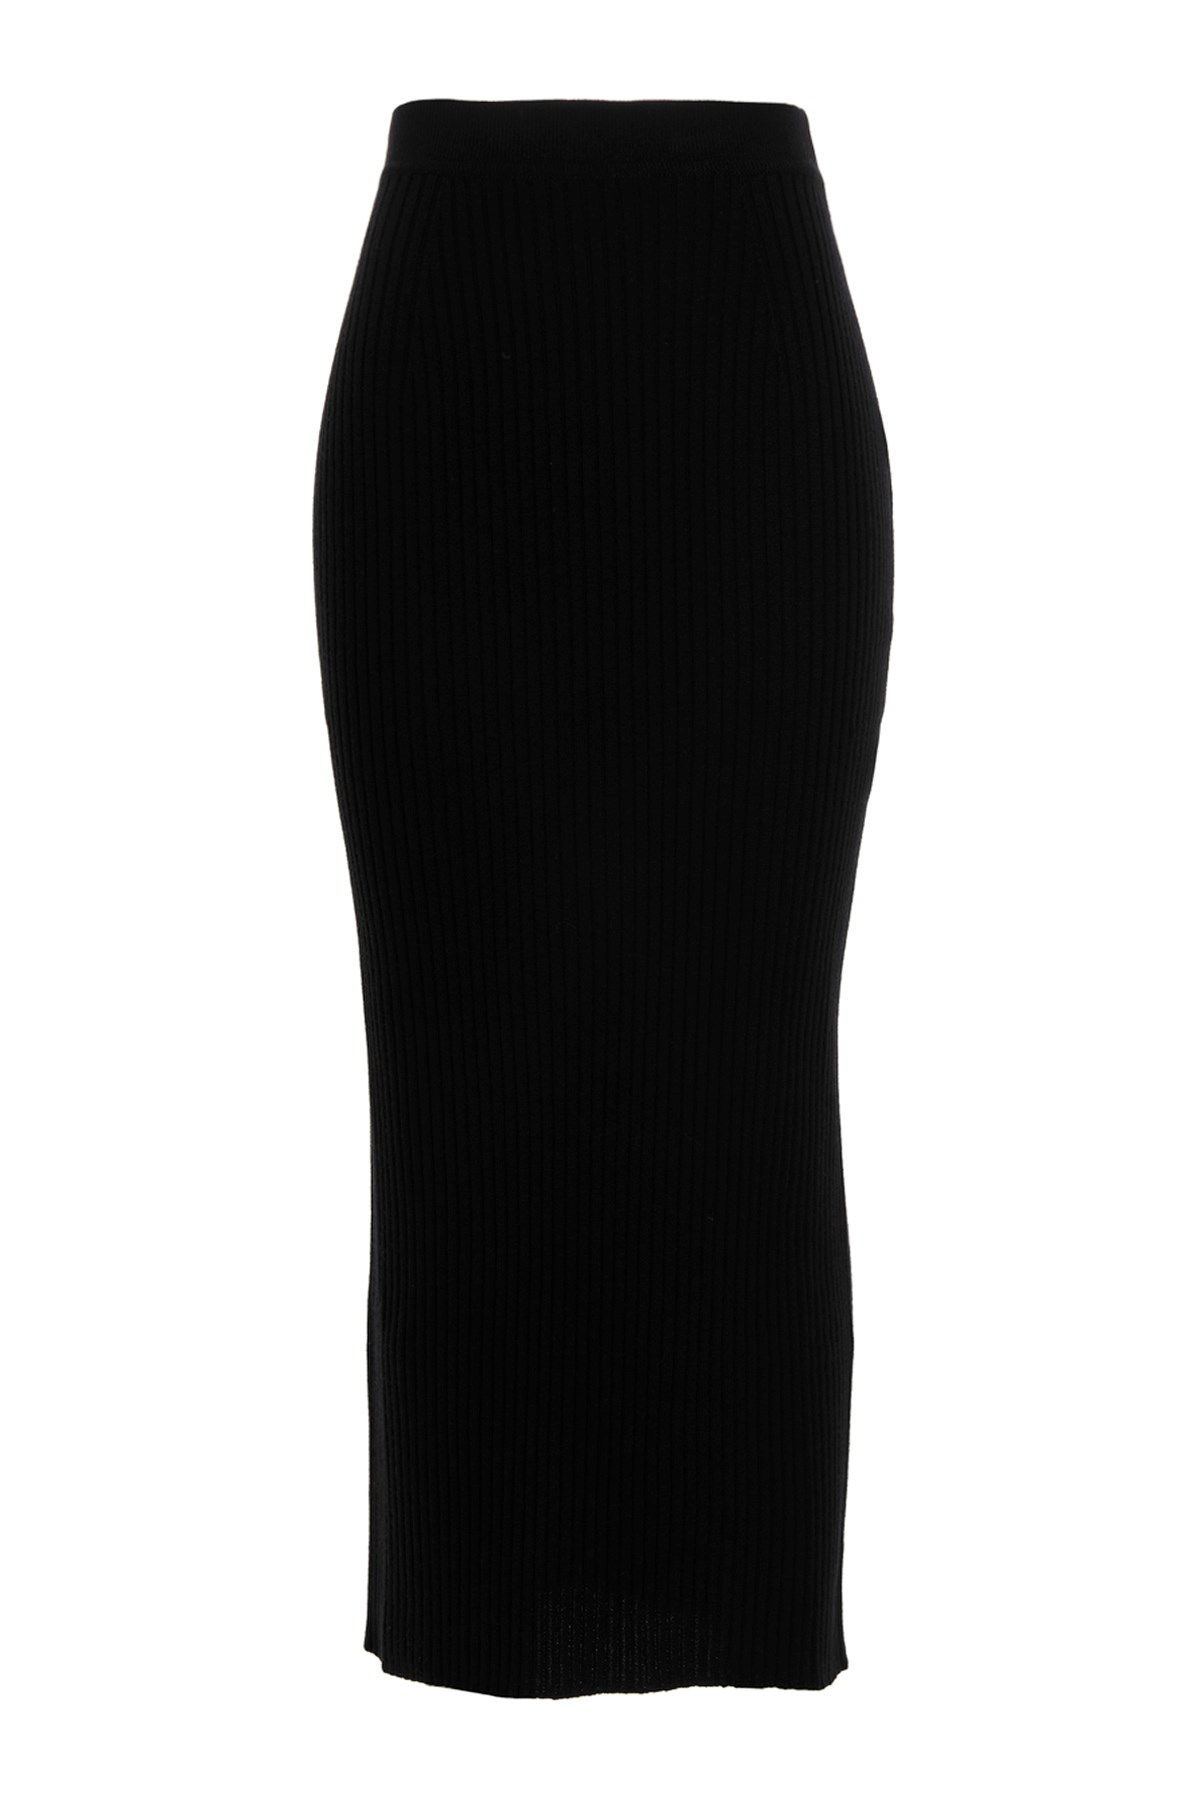 CHLOÉ Ribbed Longuette Skirt